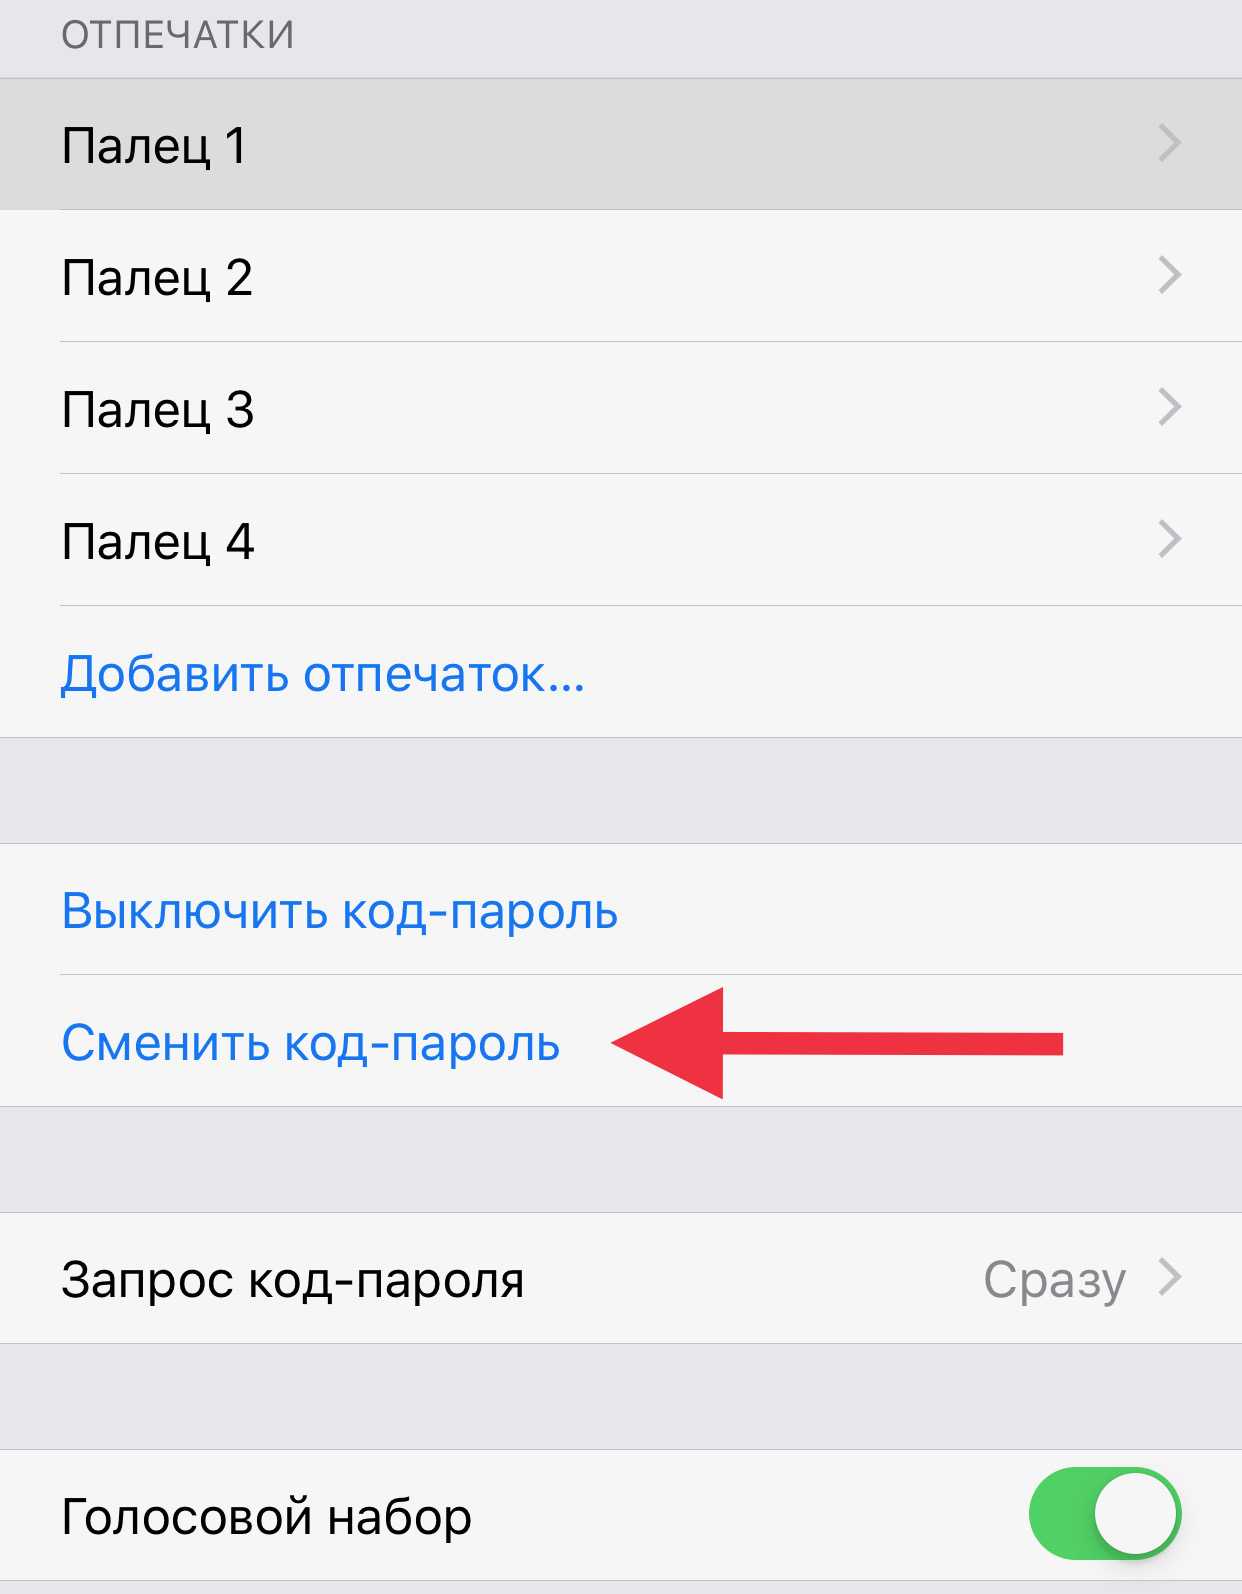 Как поменять пароль на айфоне - все способы тарифкин.ру
как поменять пароль на айфоне - все способы